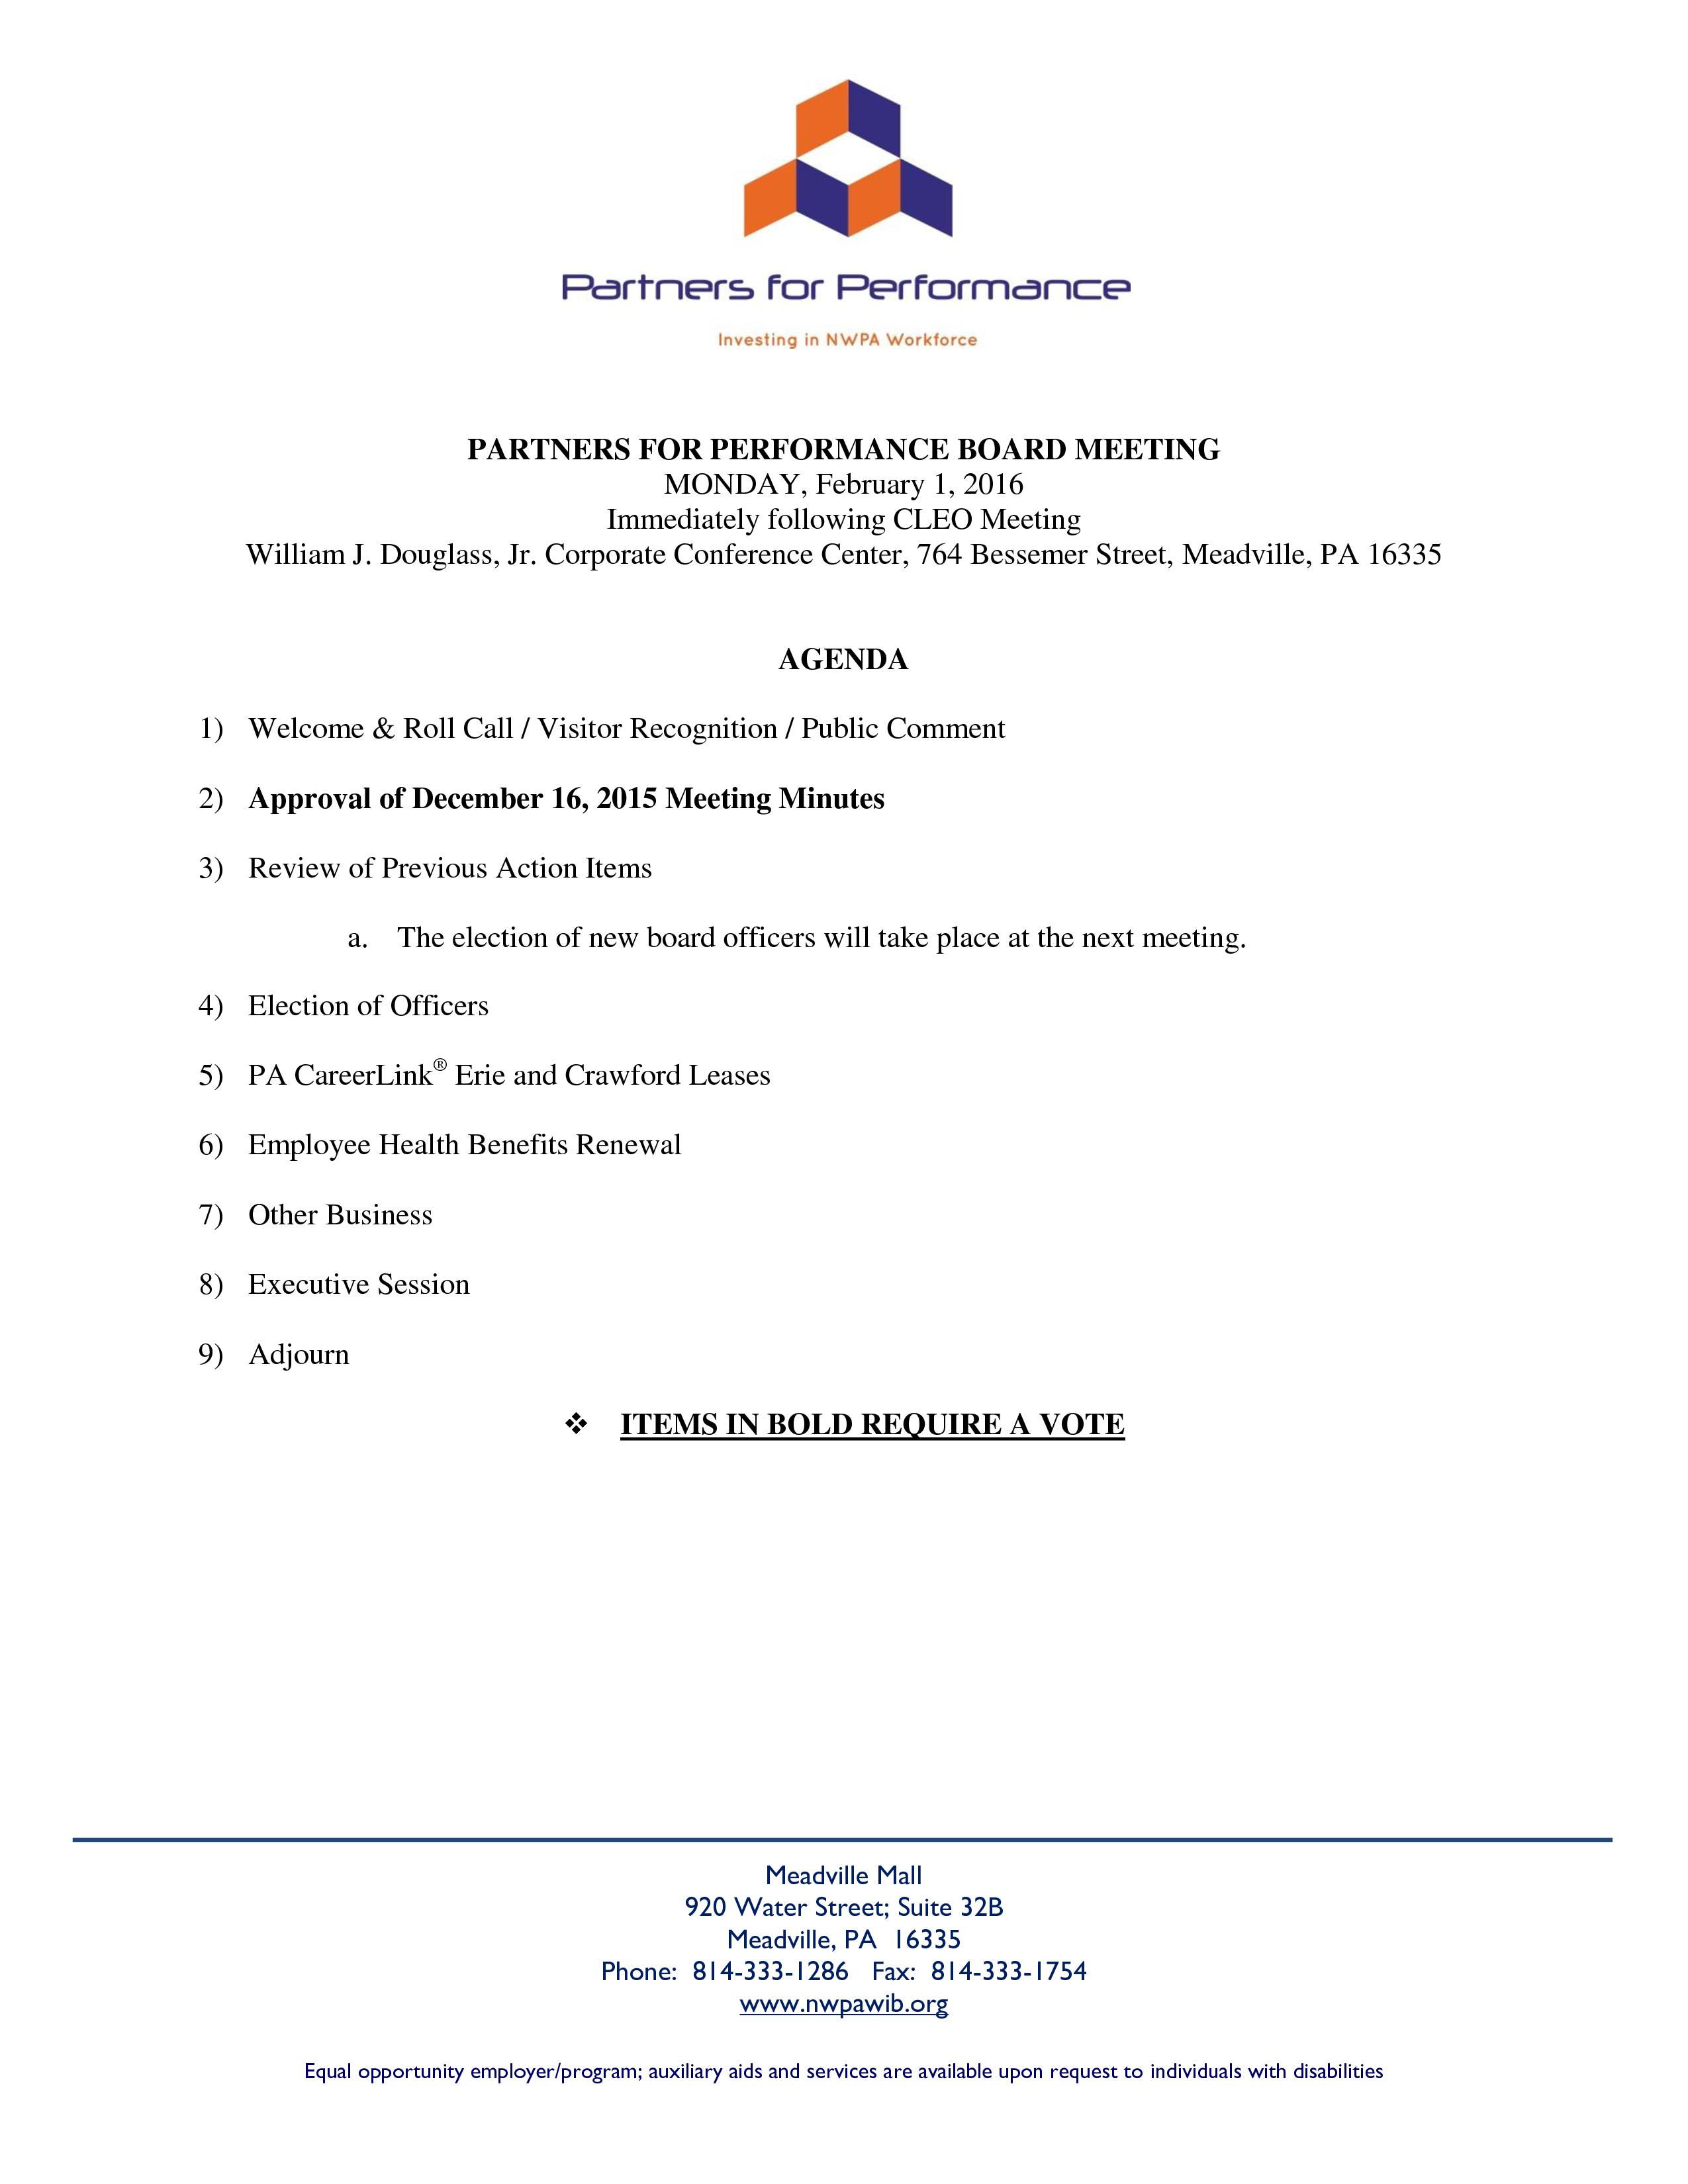 PFP Agenda 02-01-16